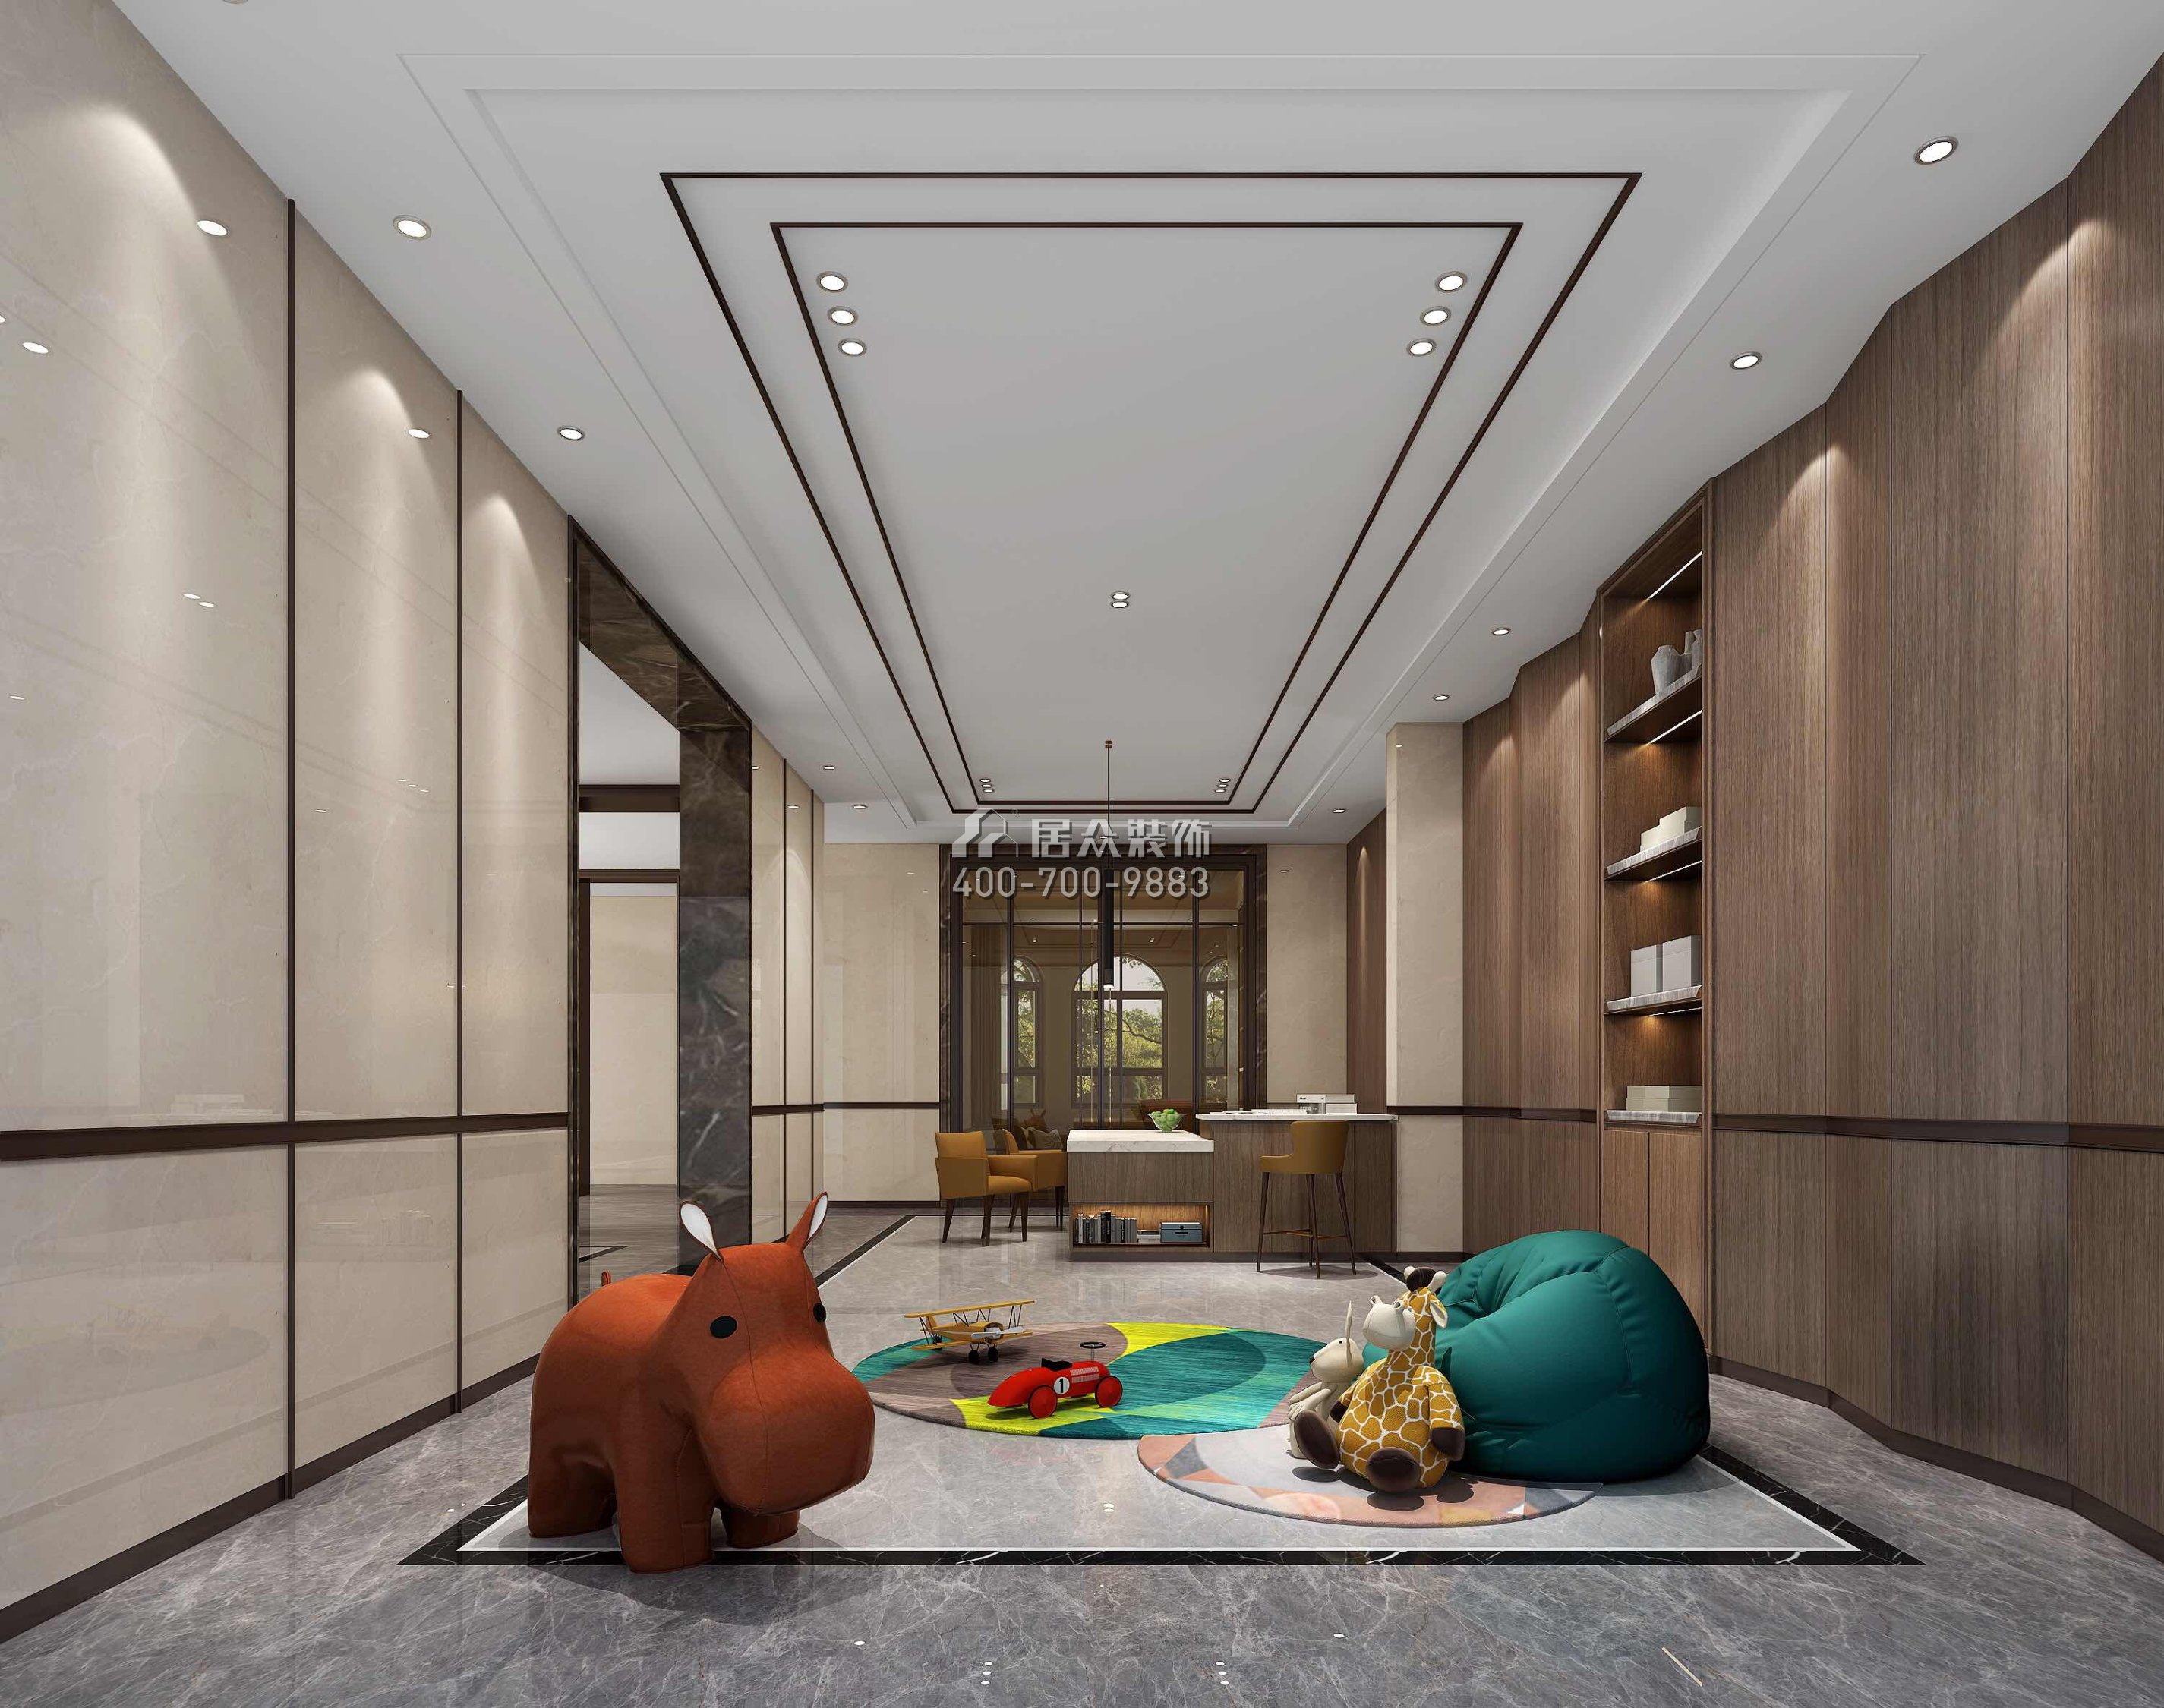 新世纪颐龙湾1000平方米中式风格别墅户型儿童房装修效果图